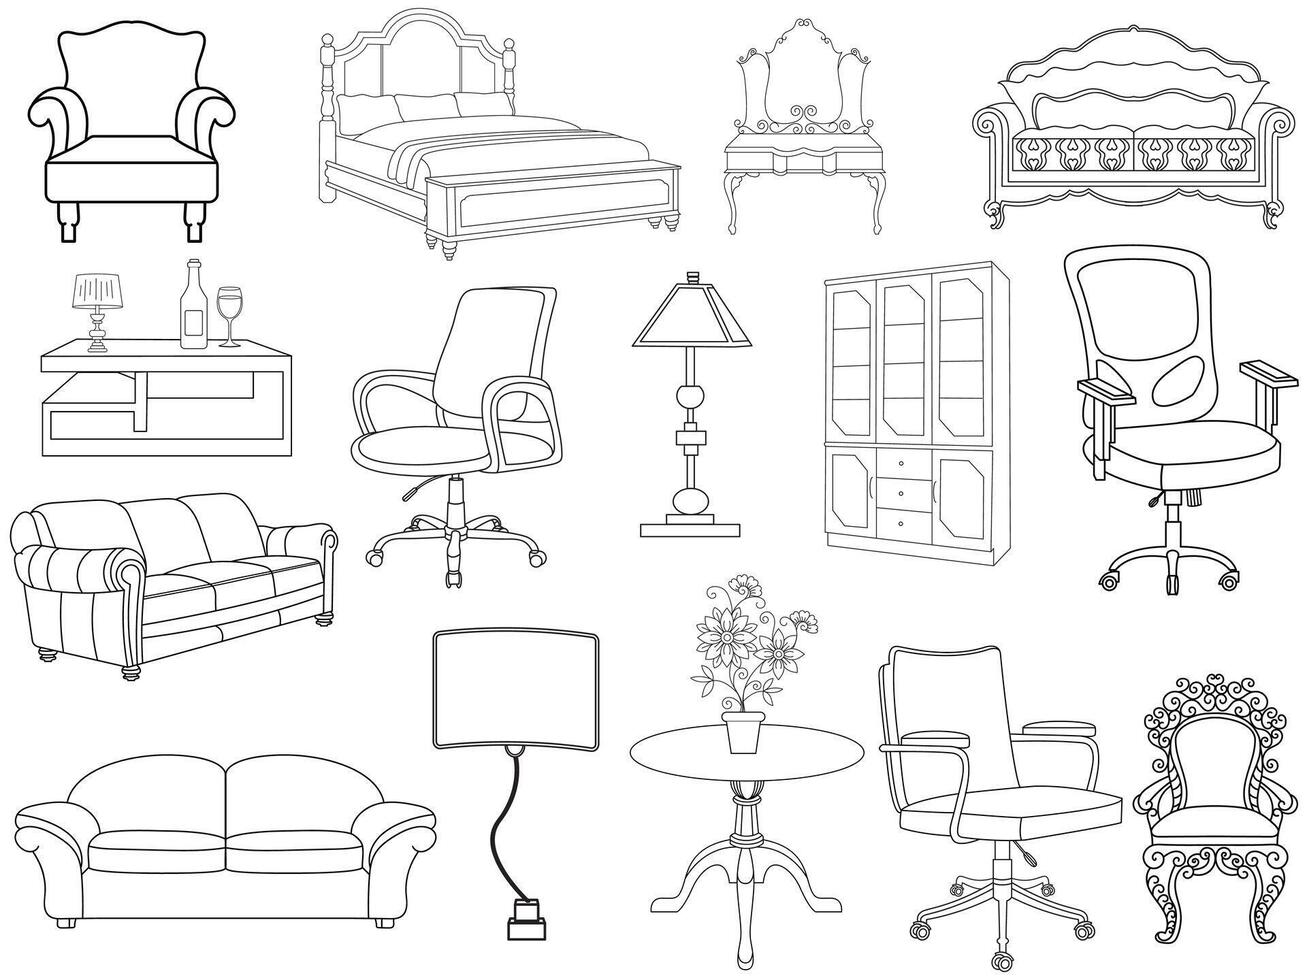 coleção do elegante moderno mobília e casa interior decorações do na moda. cozinha, quarto, sofá mesa, estante armário, cadeira, colchão, lâmpadas, escada vetor ilustrações.